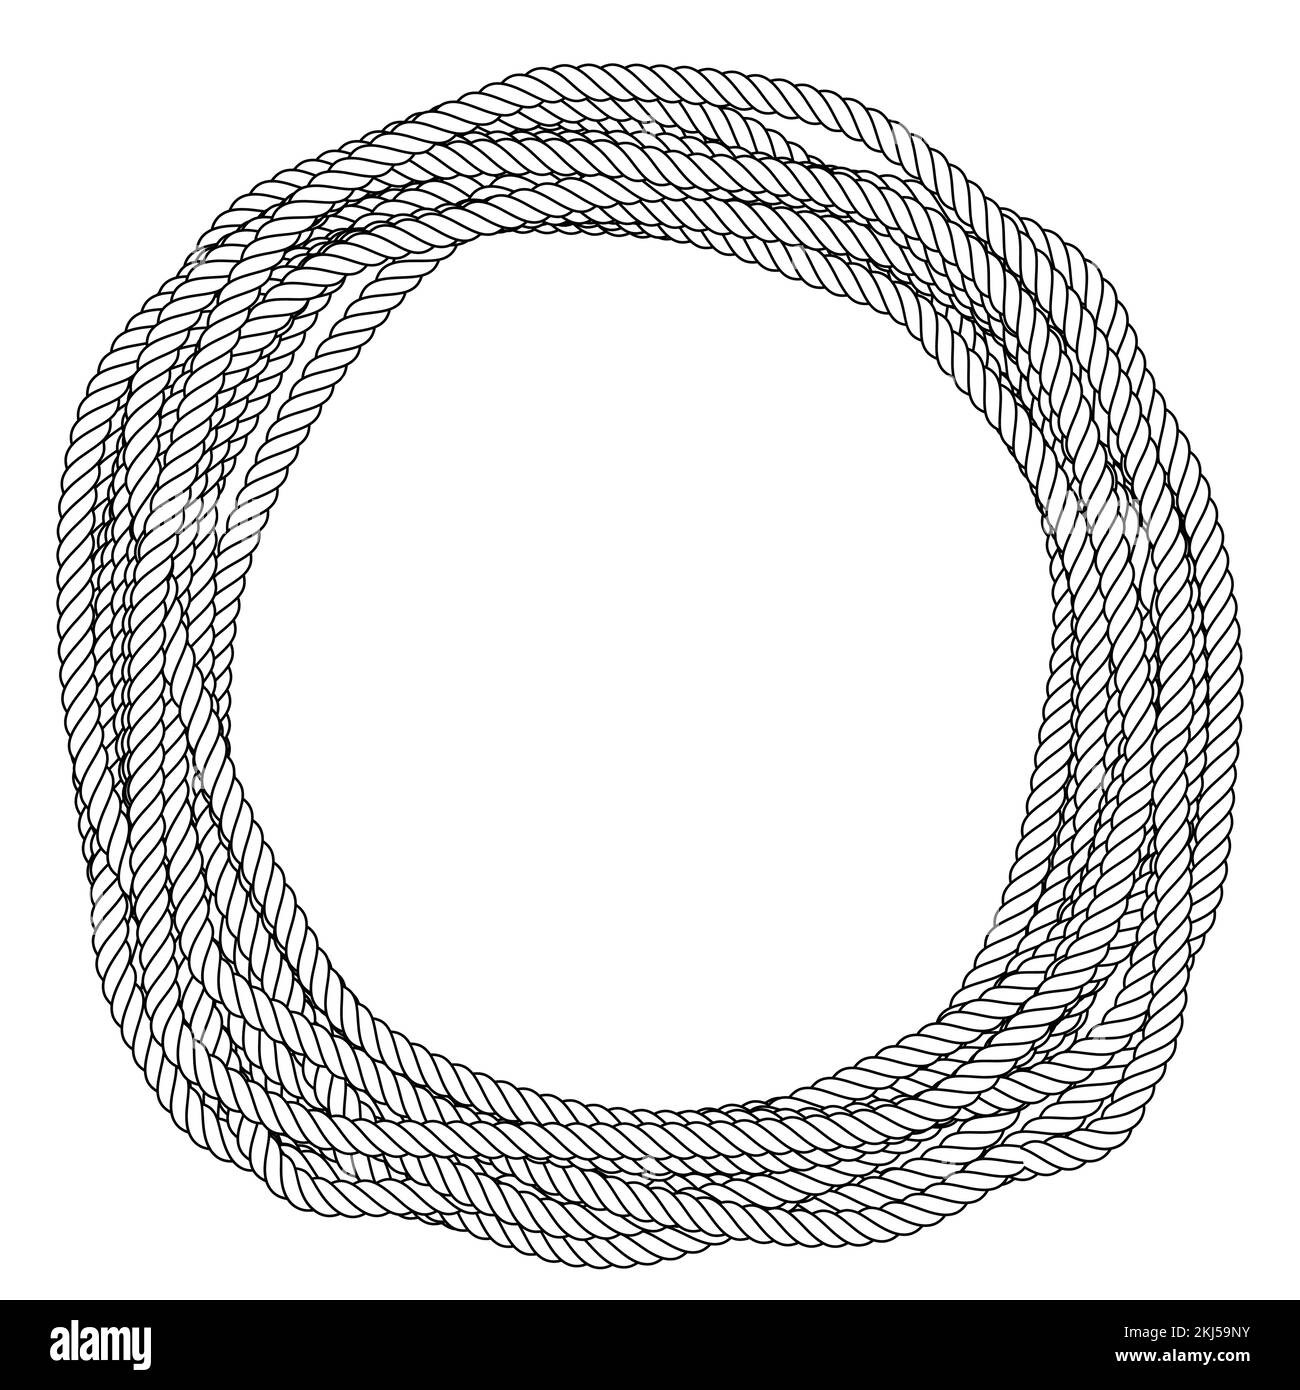 Abbildung eines gewickelten Seils Stock Vektor